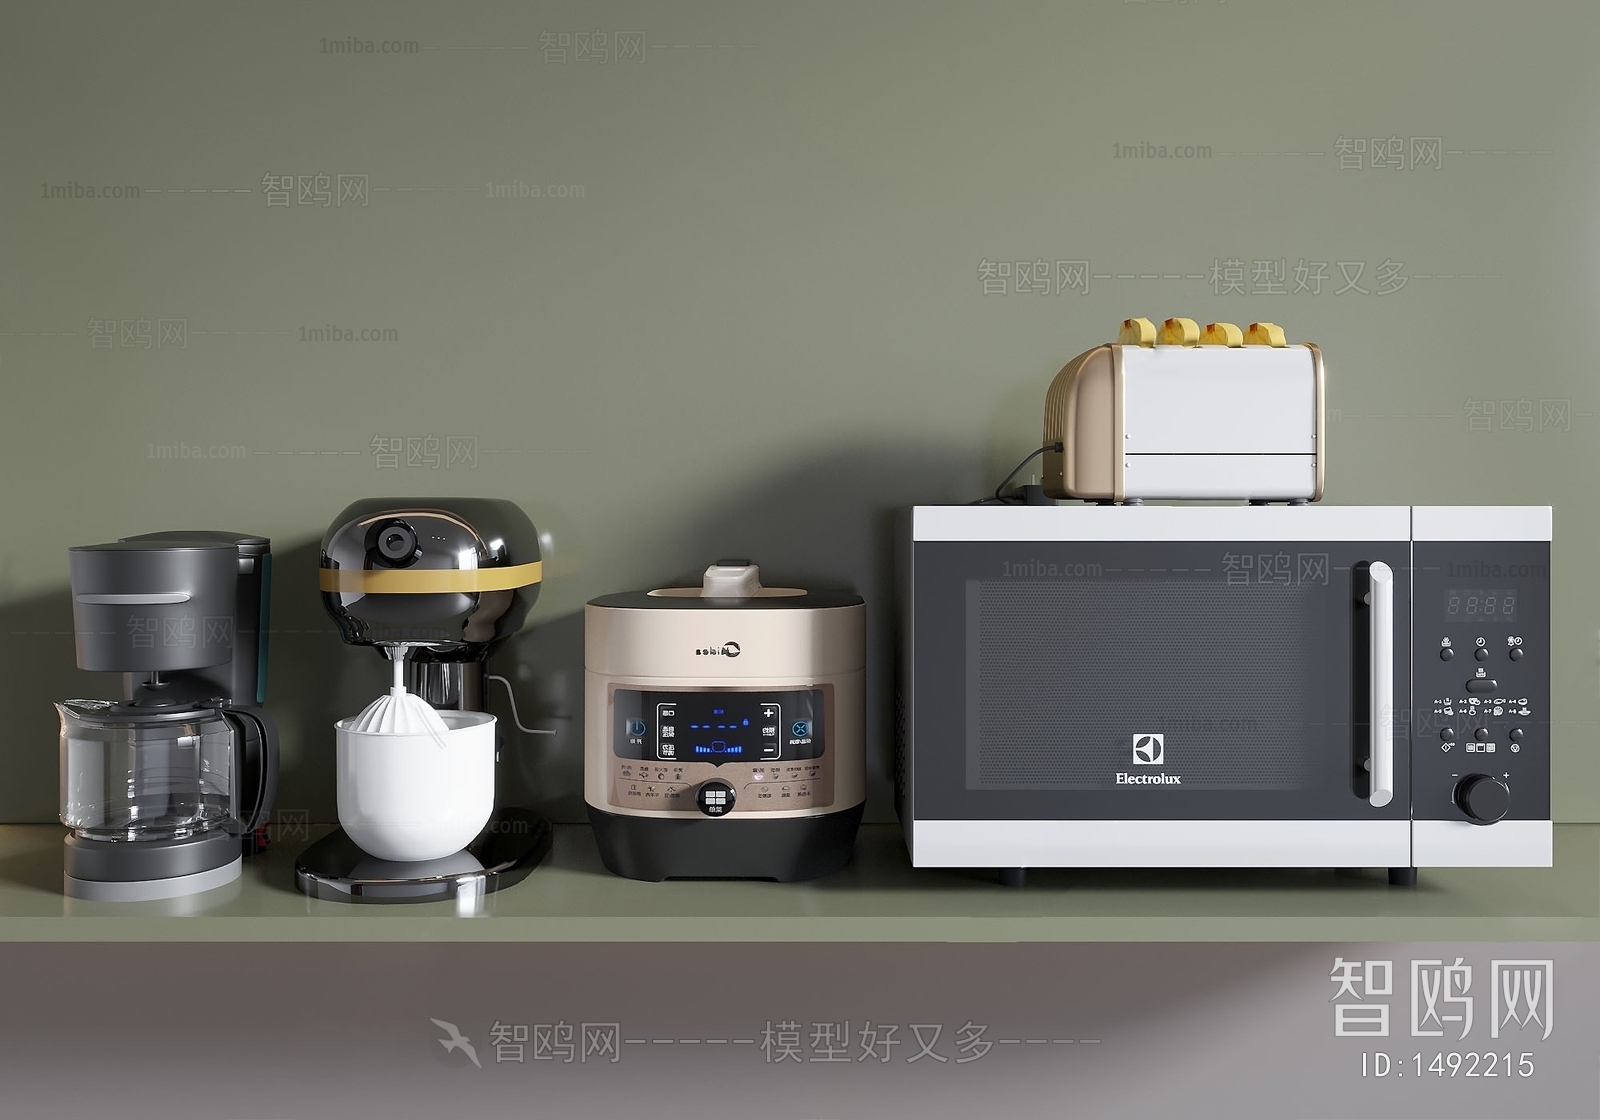 现代烤箱 电饭锅 饮水机 面包机